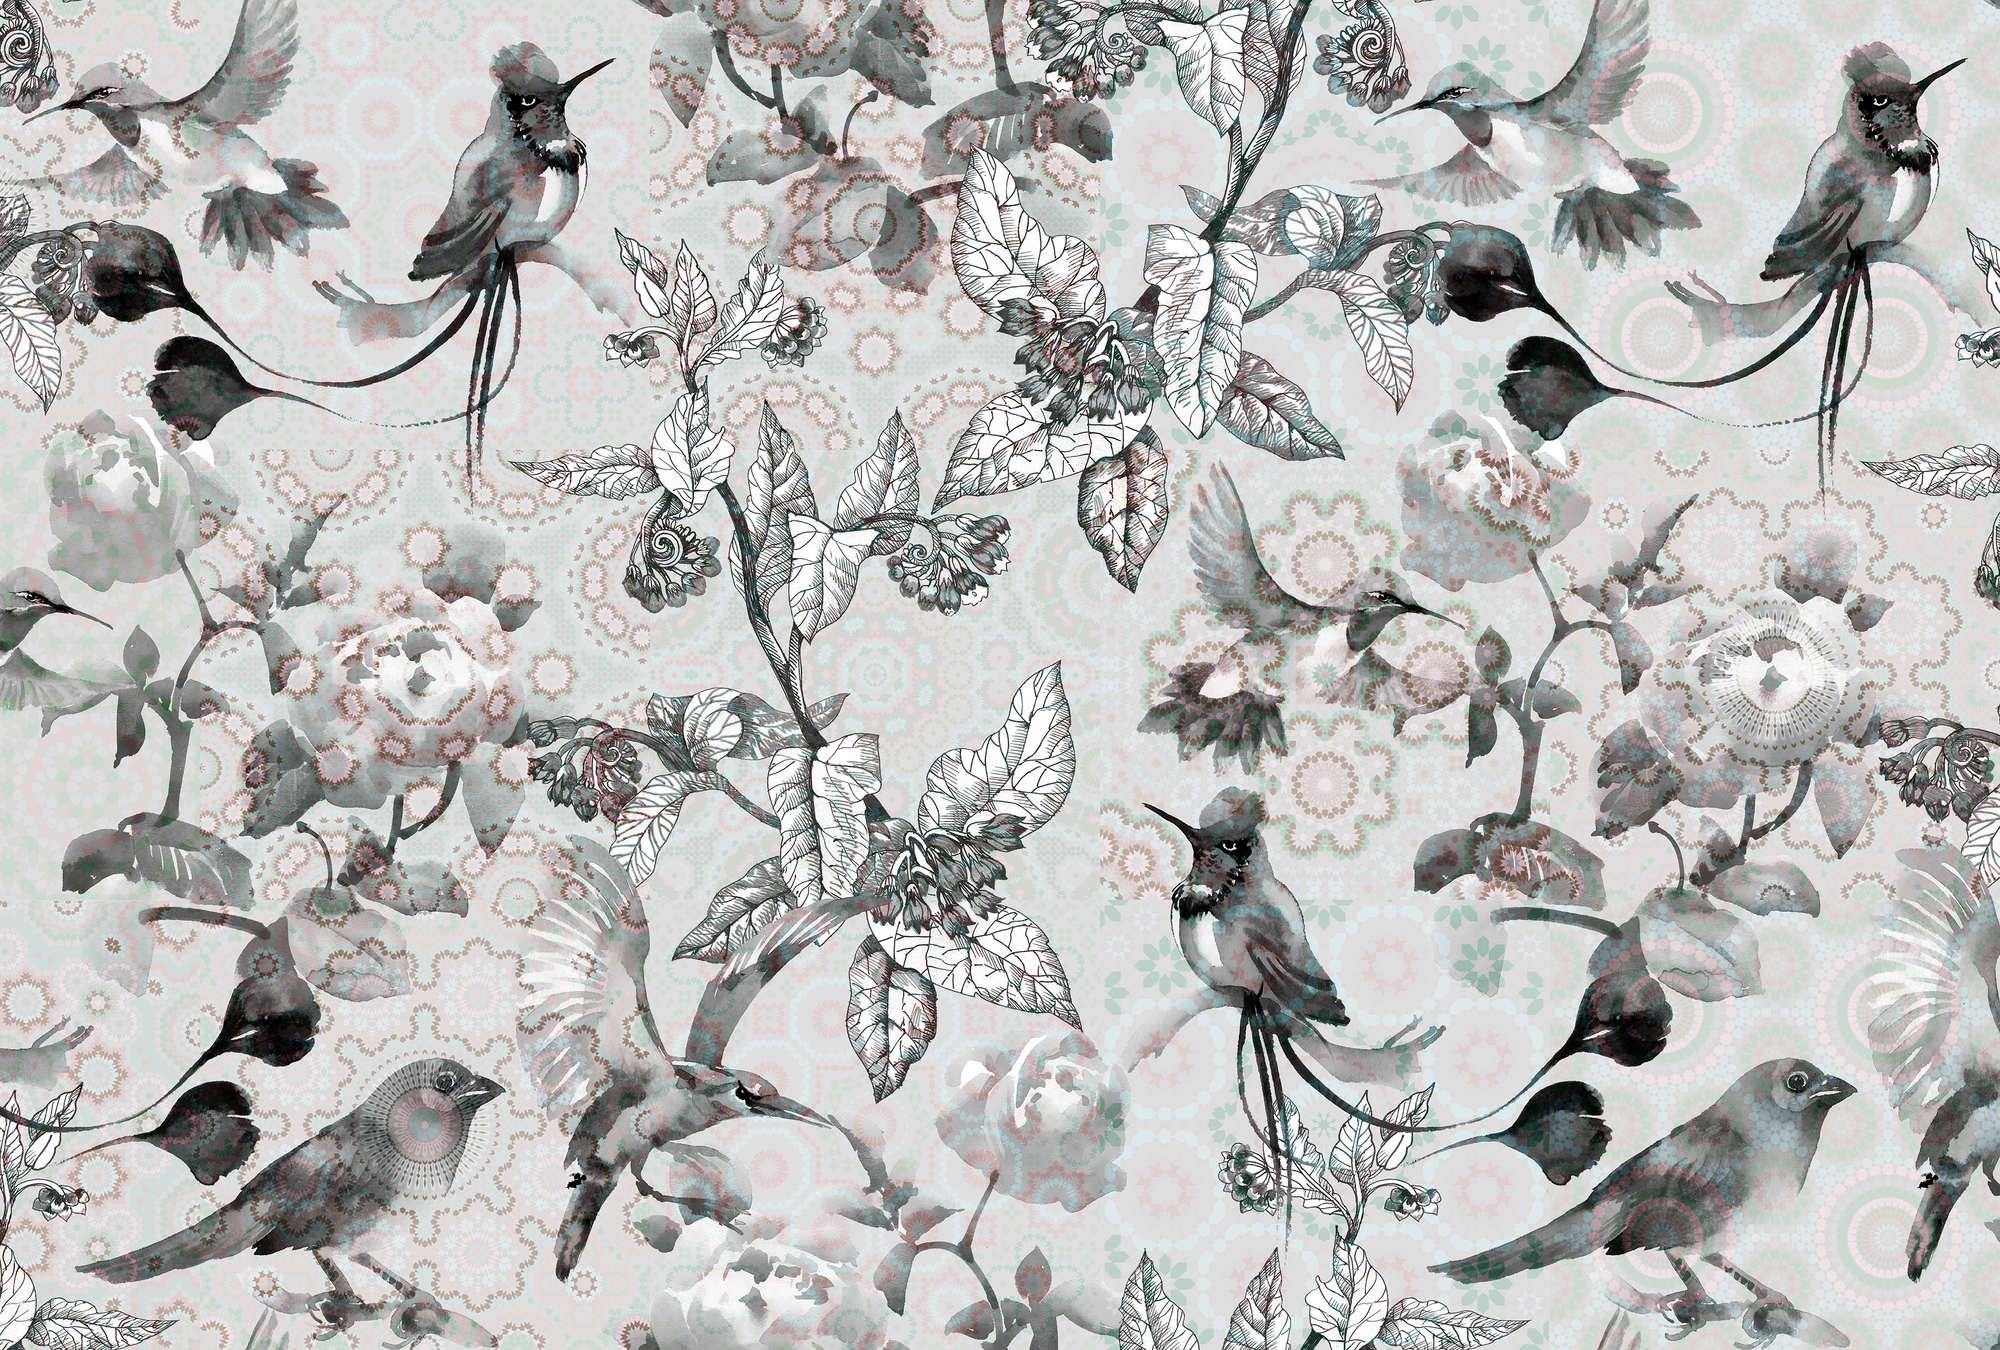             Papier peint Nature Design style collage - gris, blanc
        